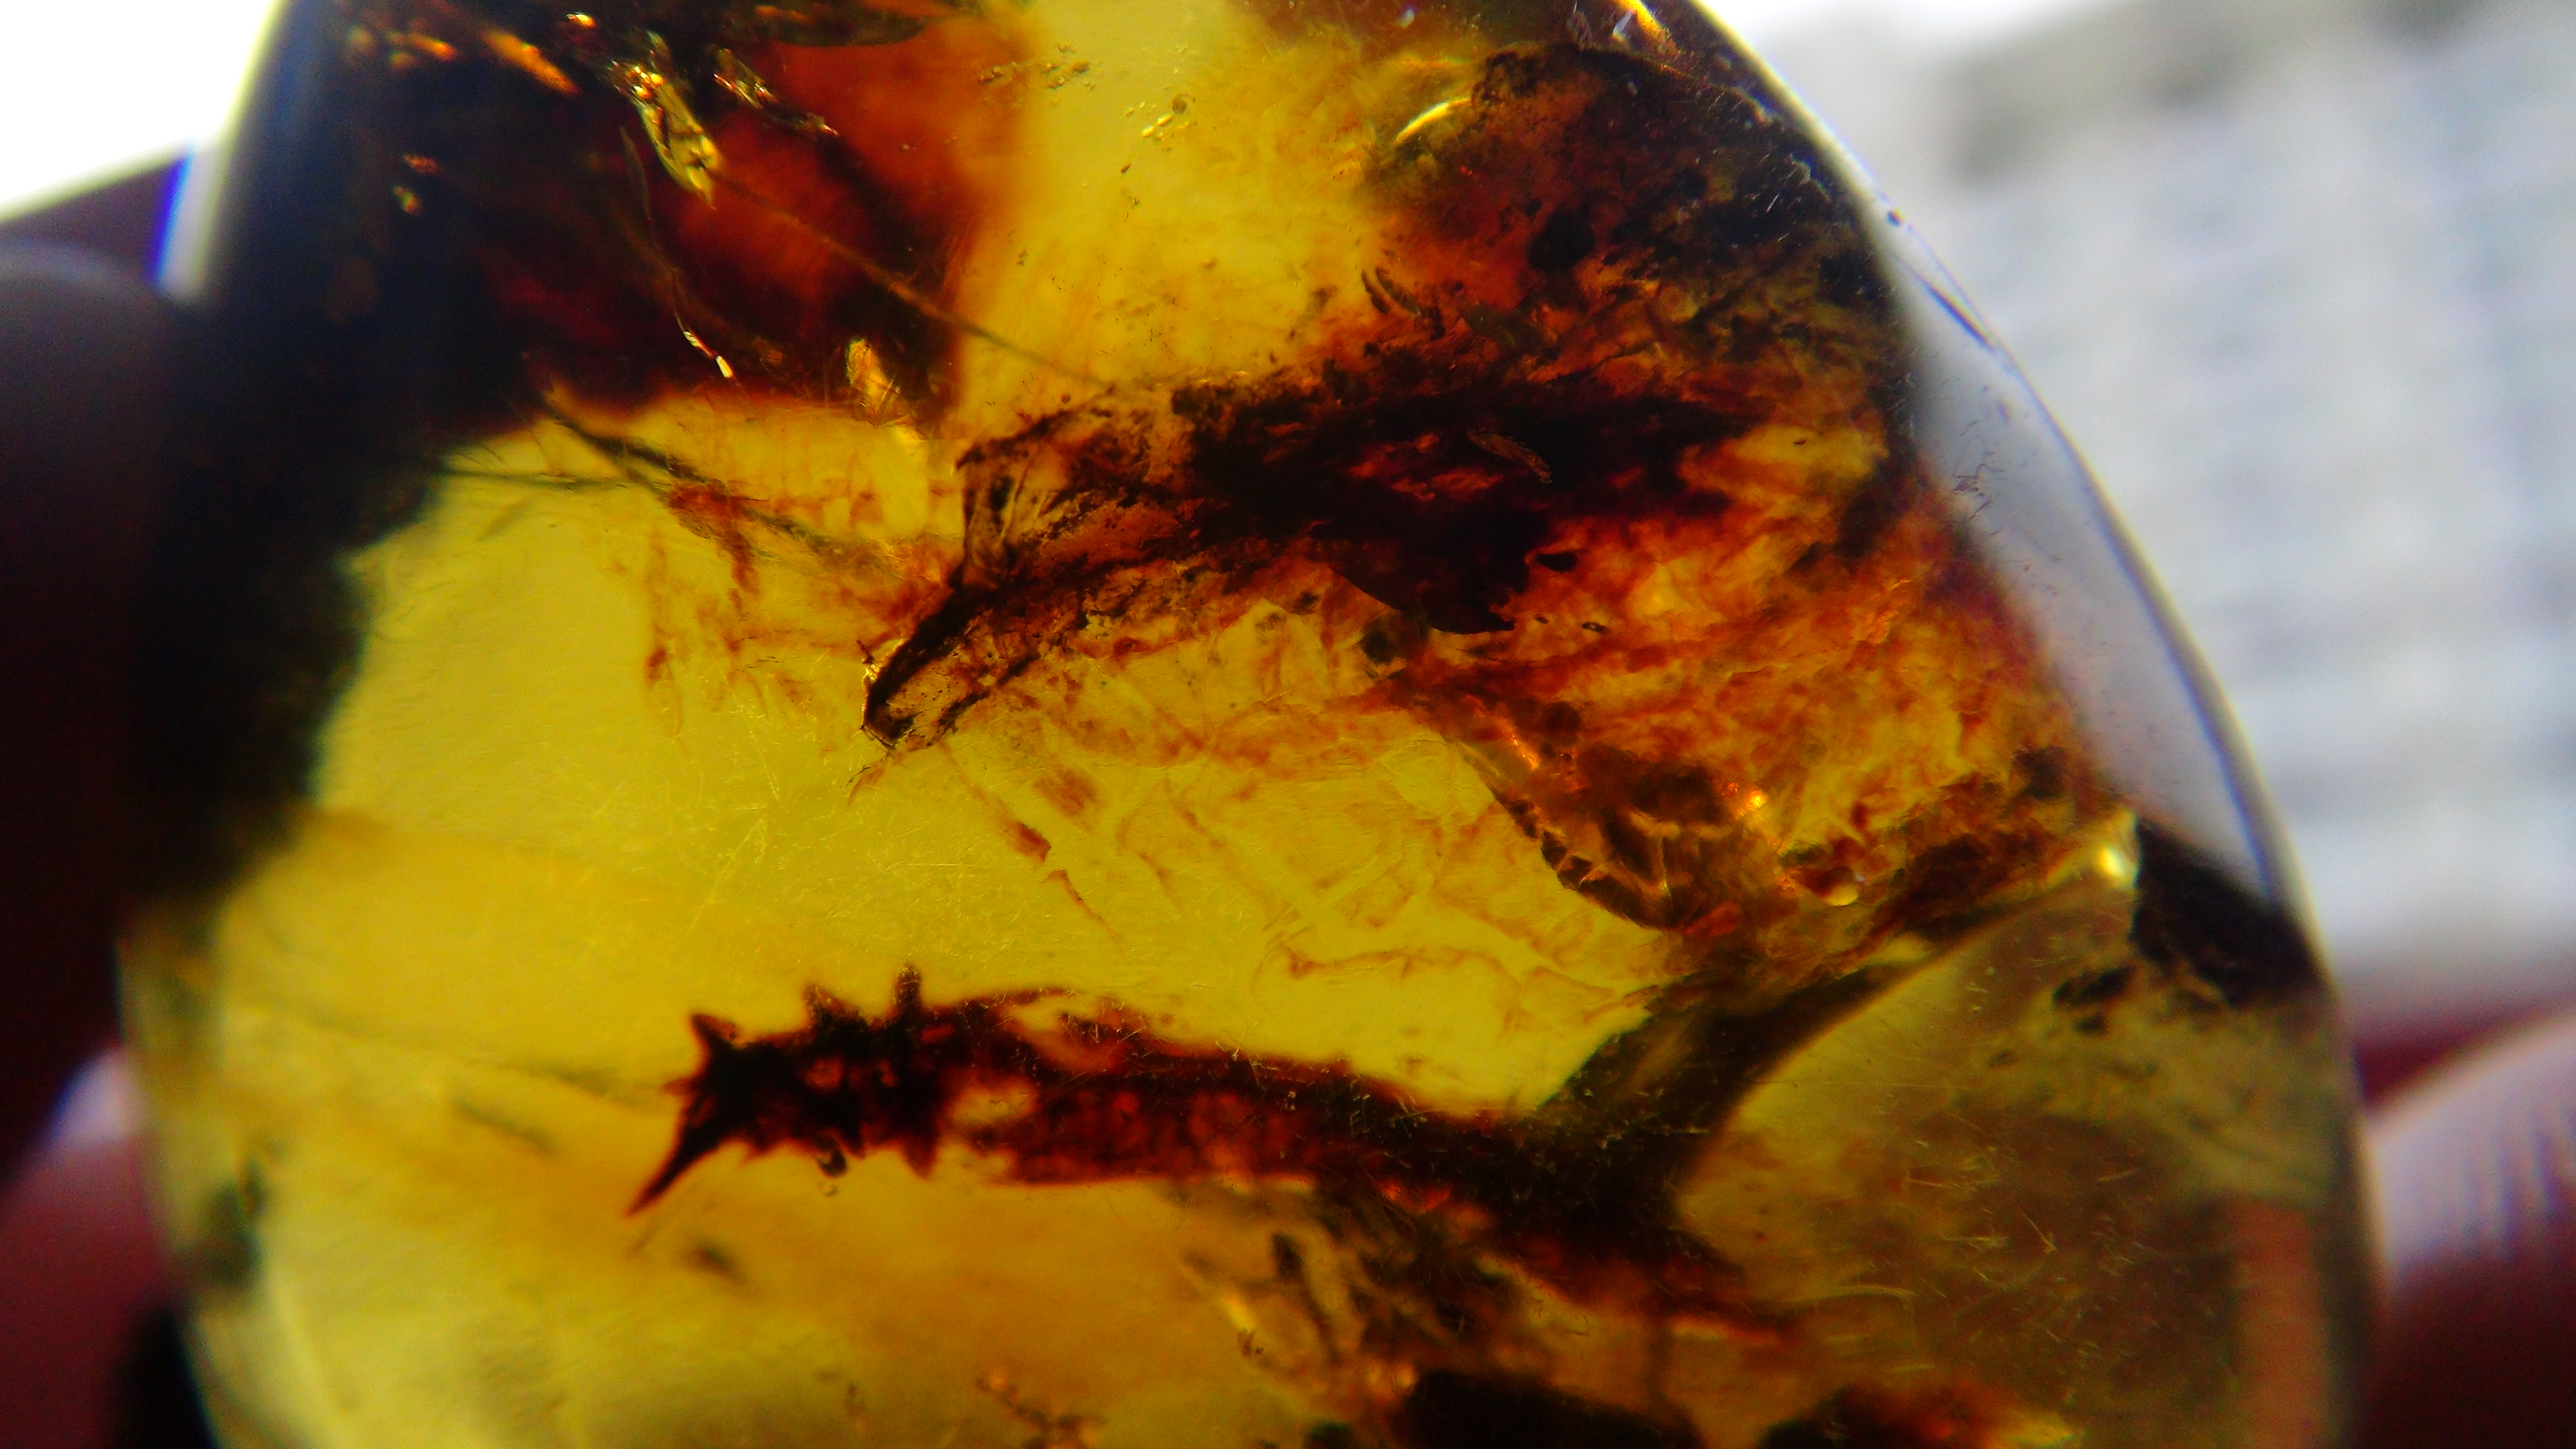 protobat in Cretaceous amber